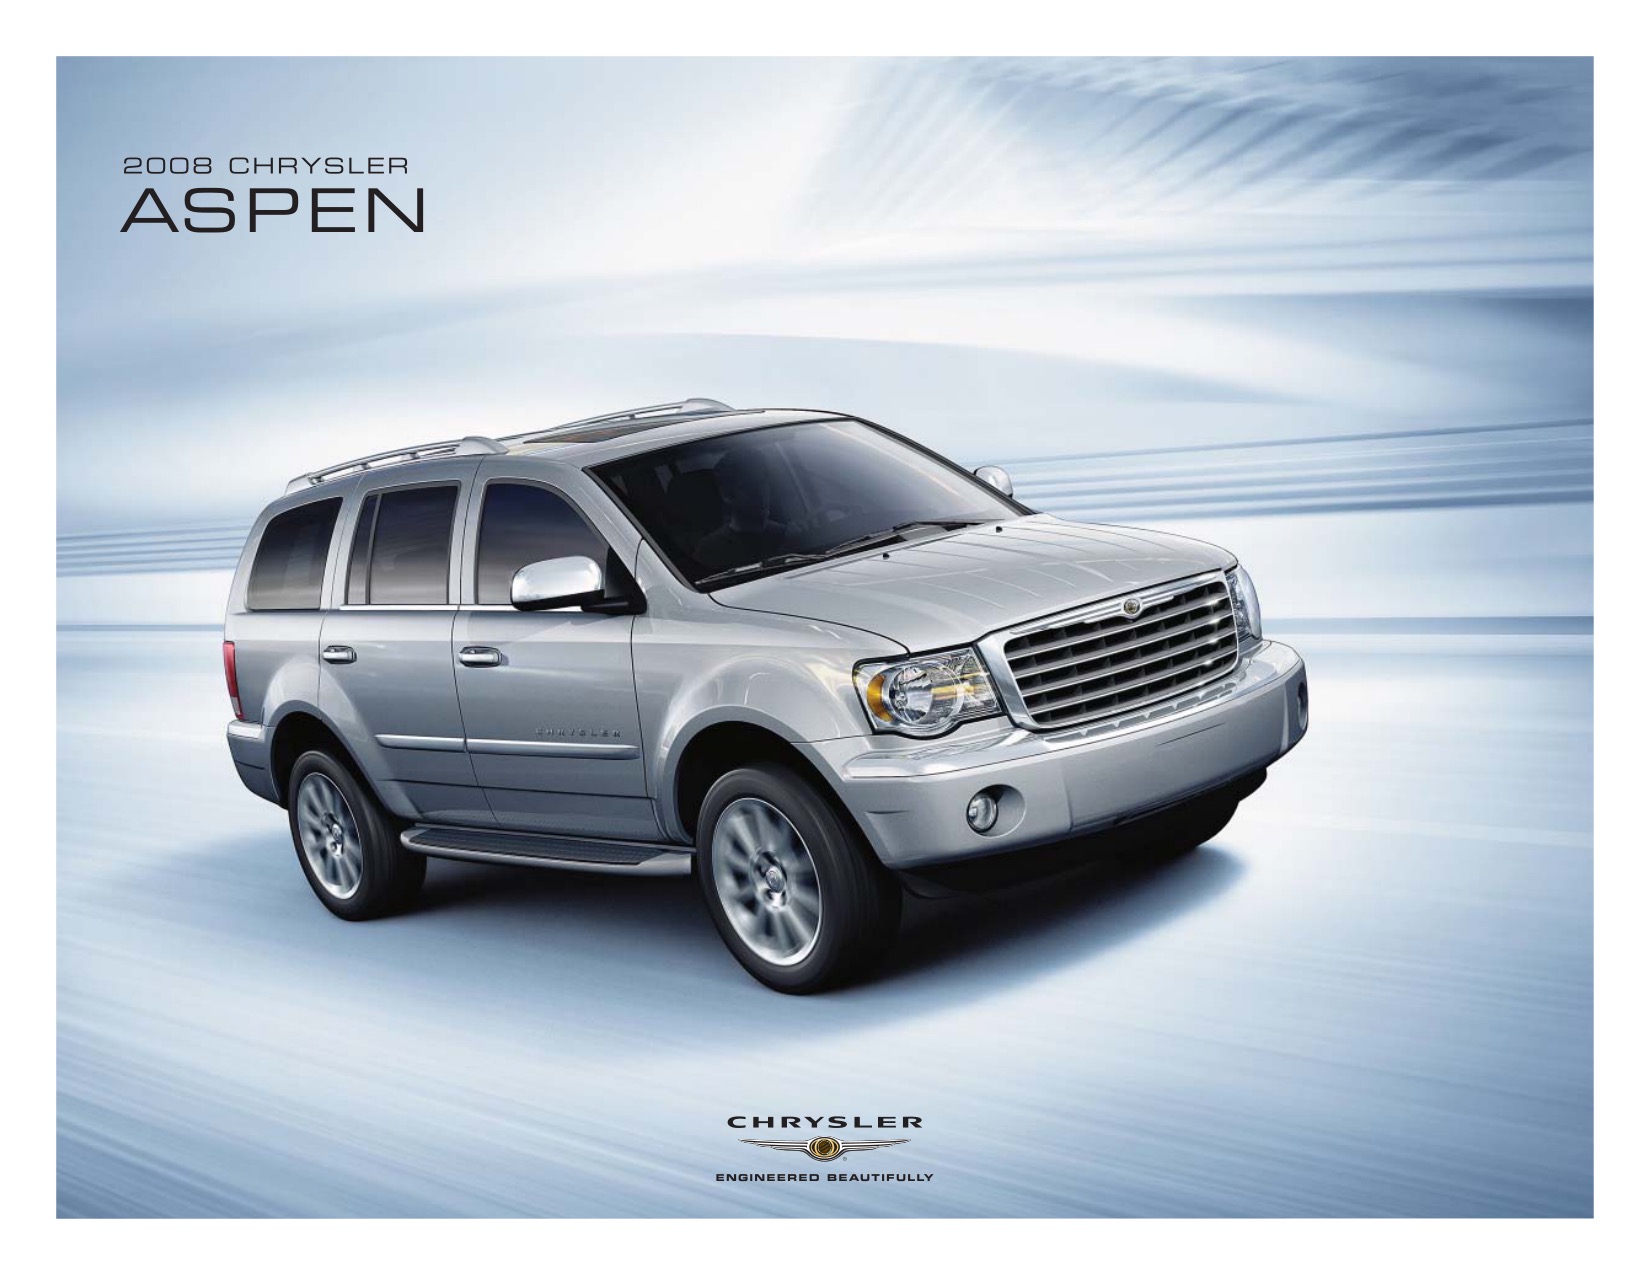 2008 Chrysler Aspen Brochure